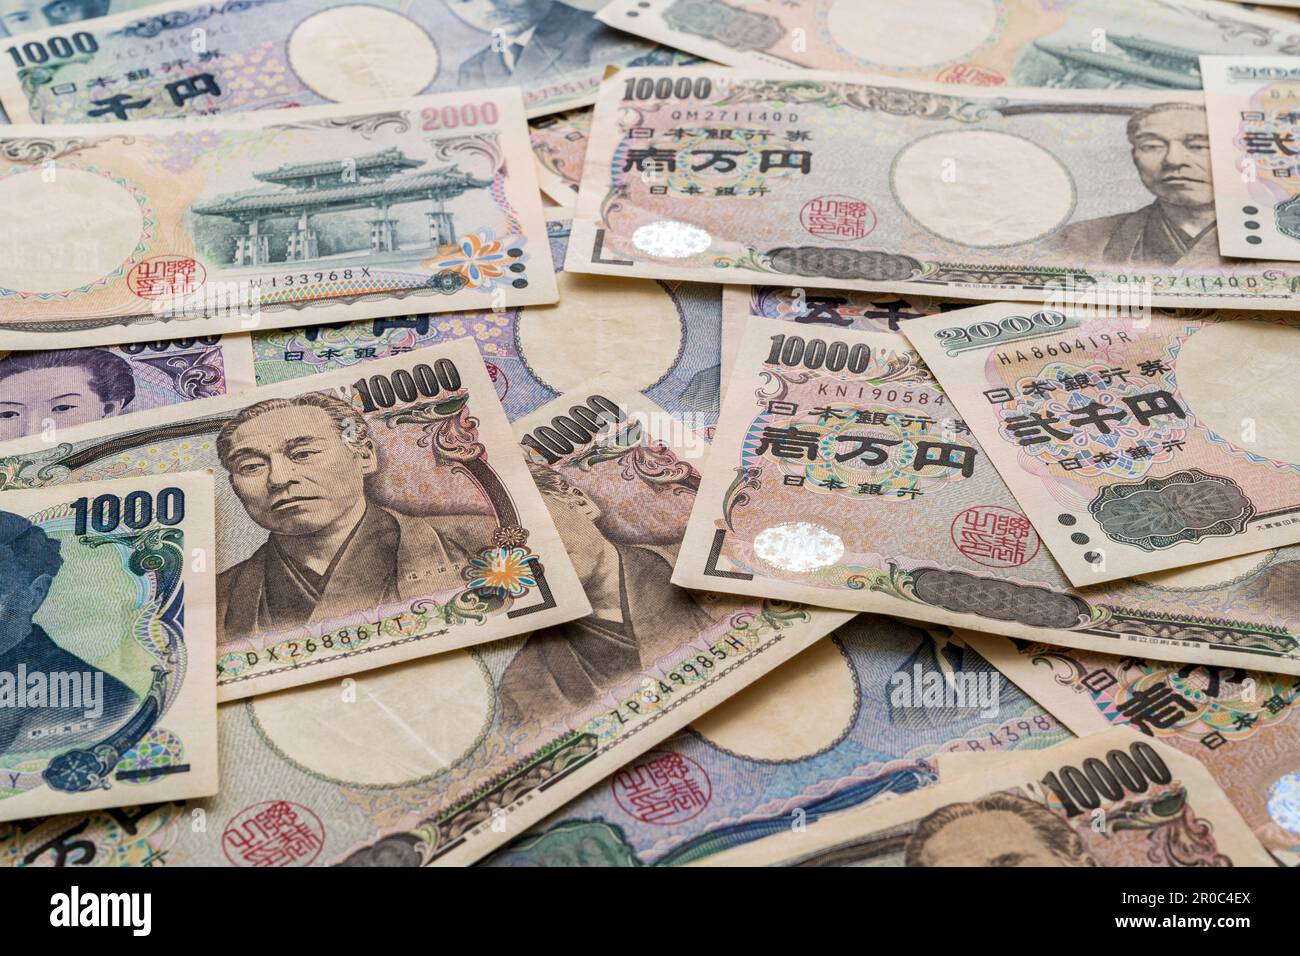 Devise japonaise. Voir regarder vers le bas un tas de billets japonais en différentes valeurs, 1000, 2000, 5000 et 10 000 yens Banque D'Images